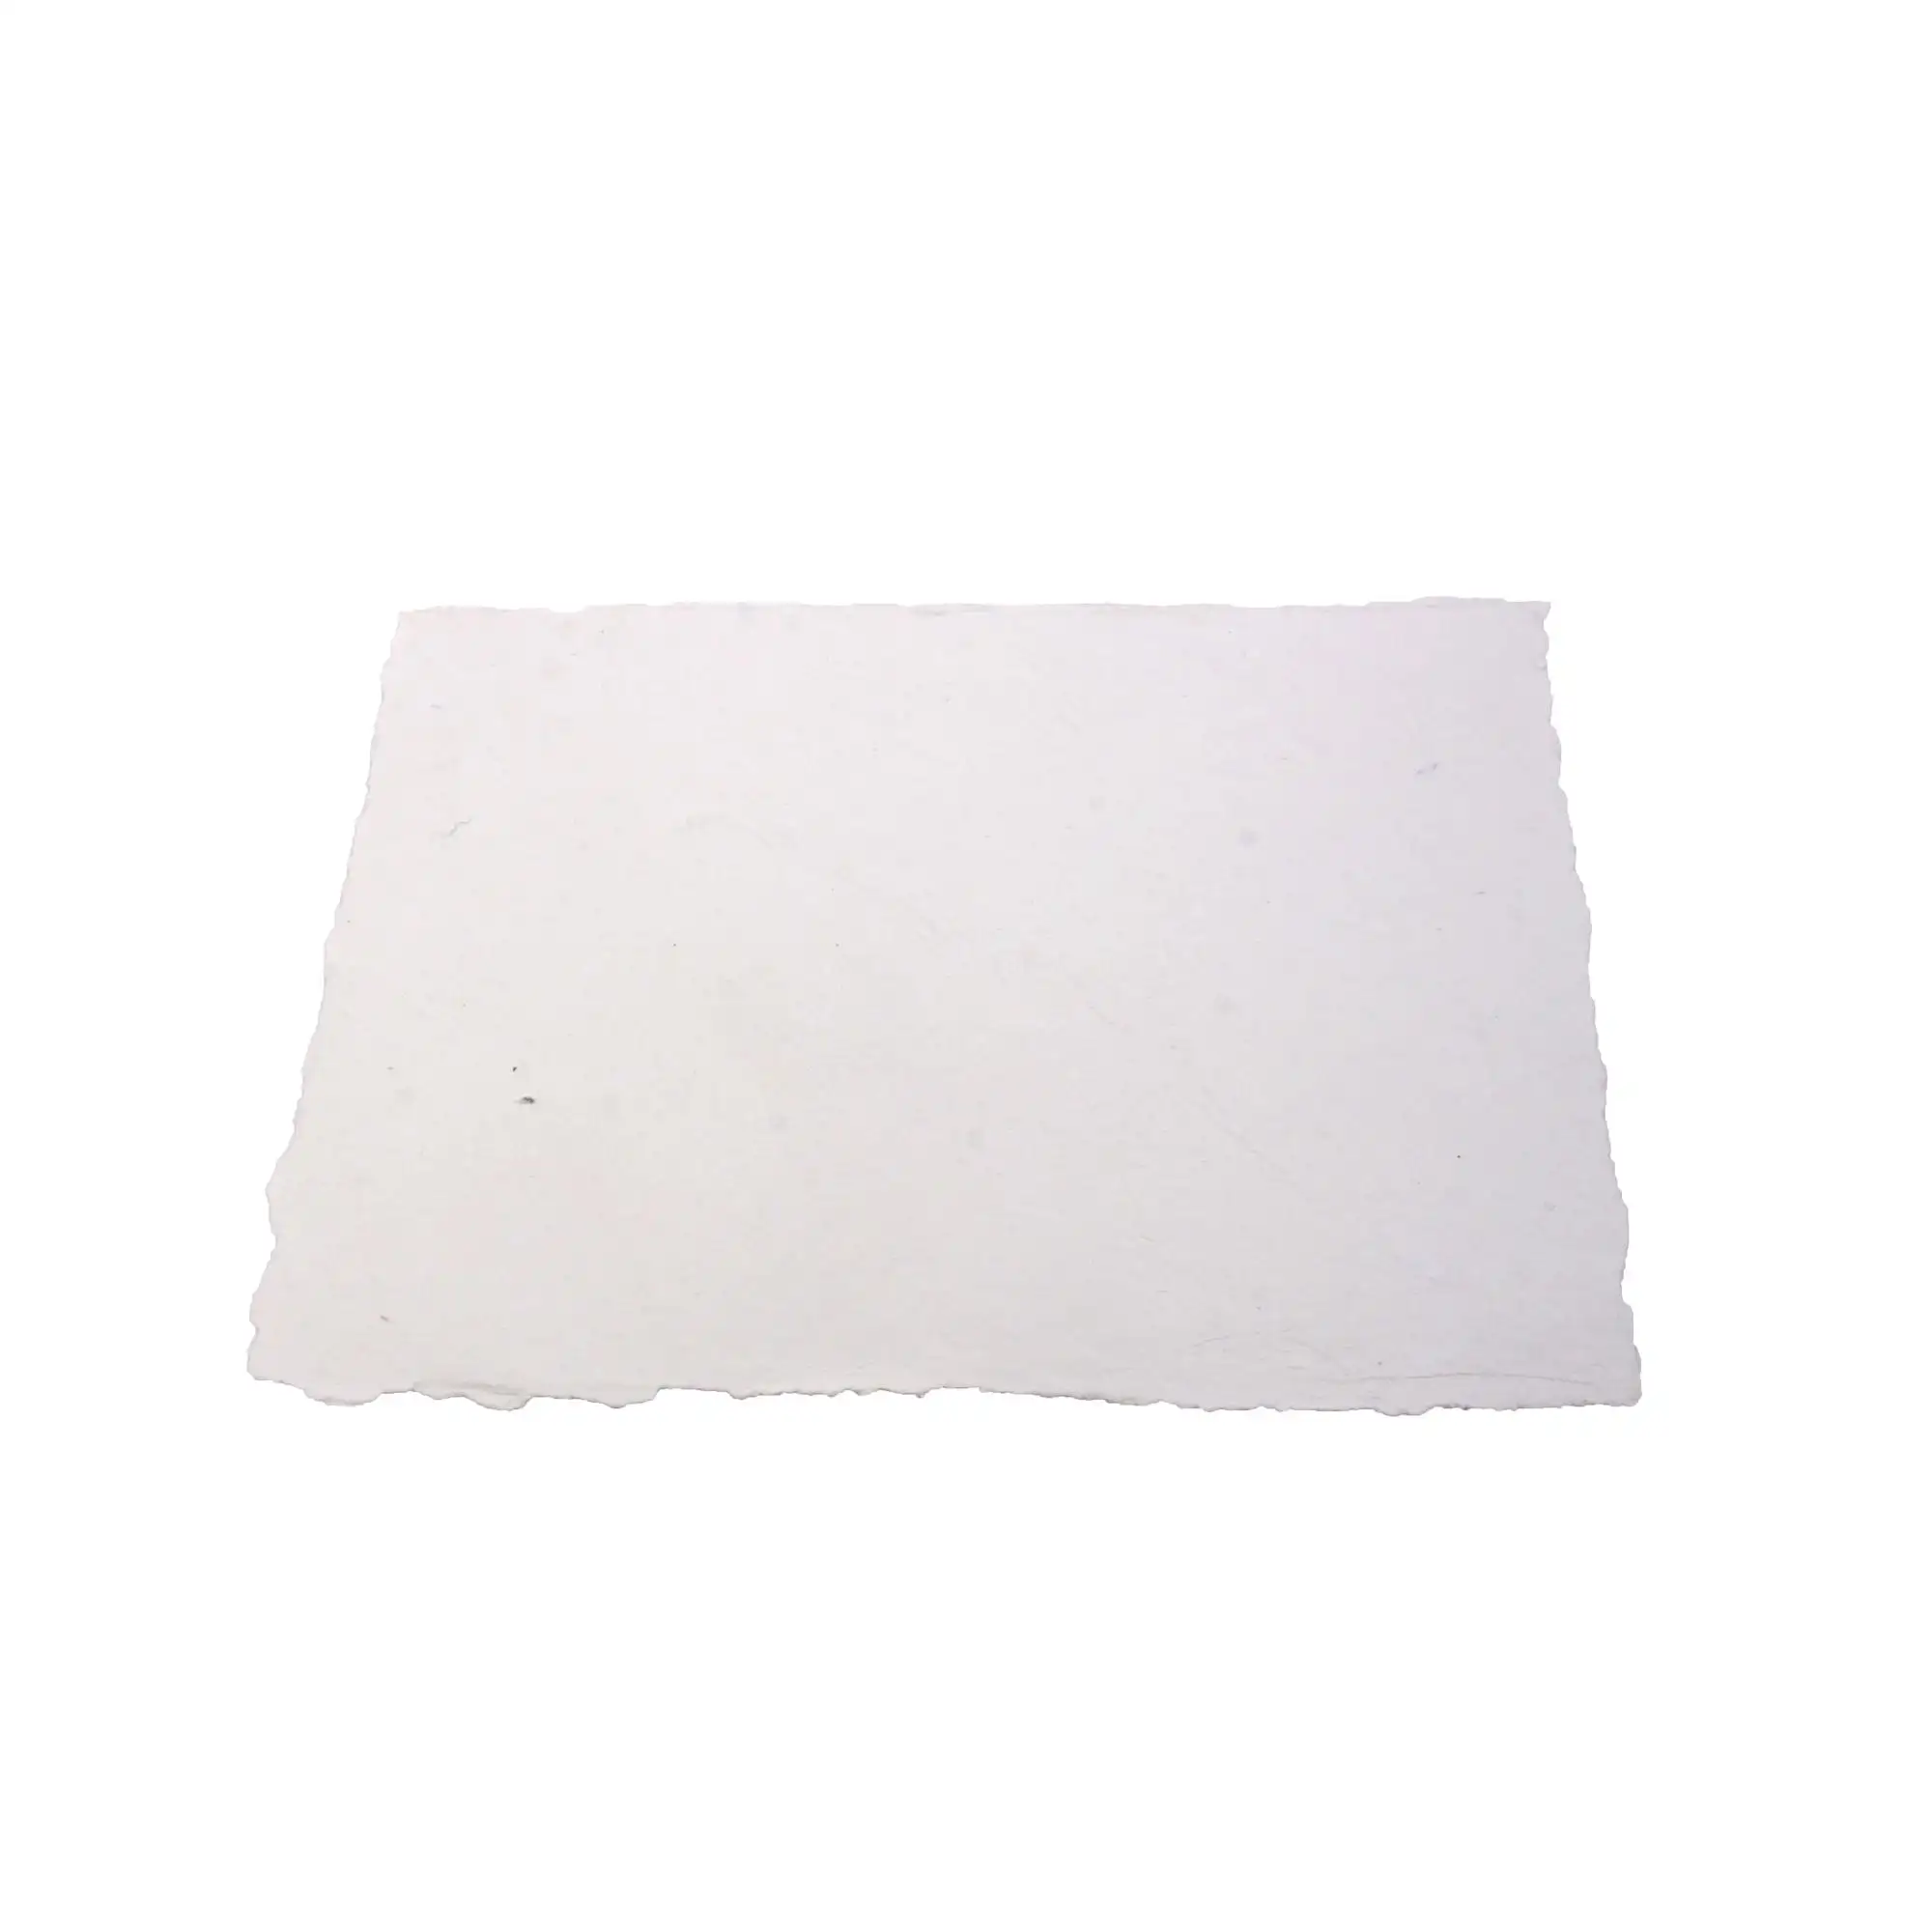 Deckle kenar el yapımı kağıt boş sayfa davetiye için Letterpres kırtasiye kağıt geri dönüşümlü pamuk paçavra beyaz kağıt yanmış kenar